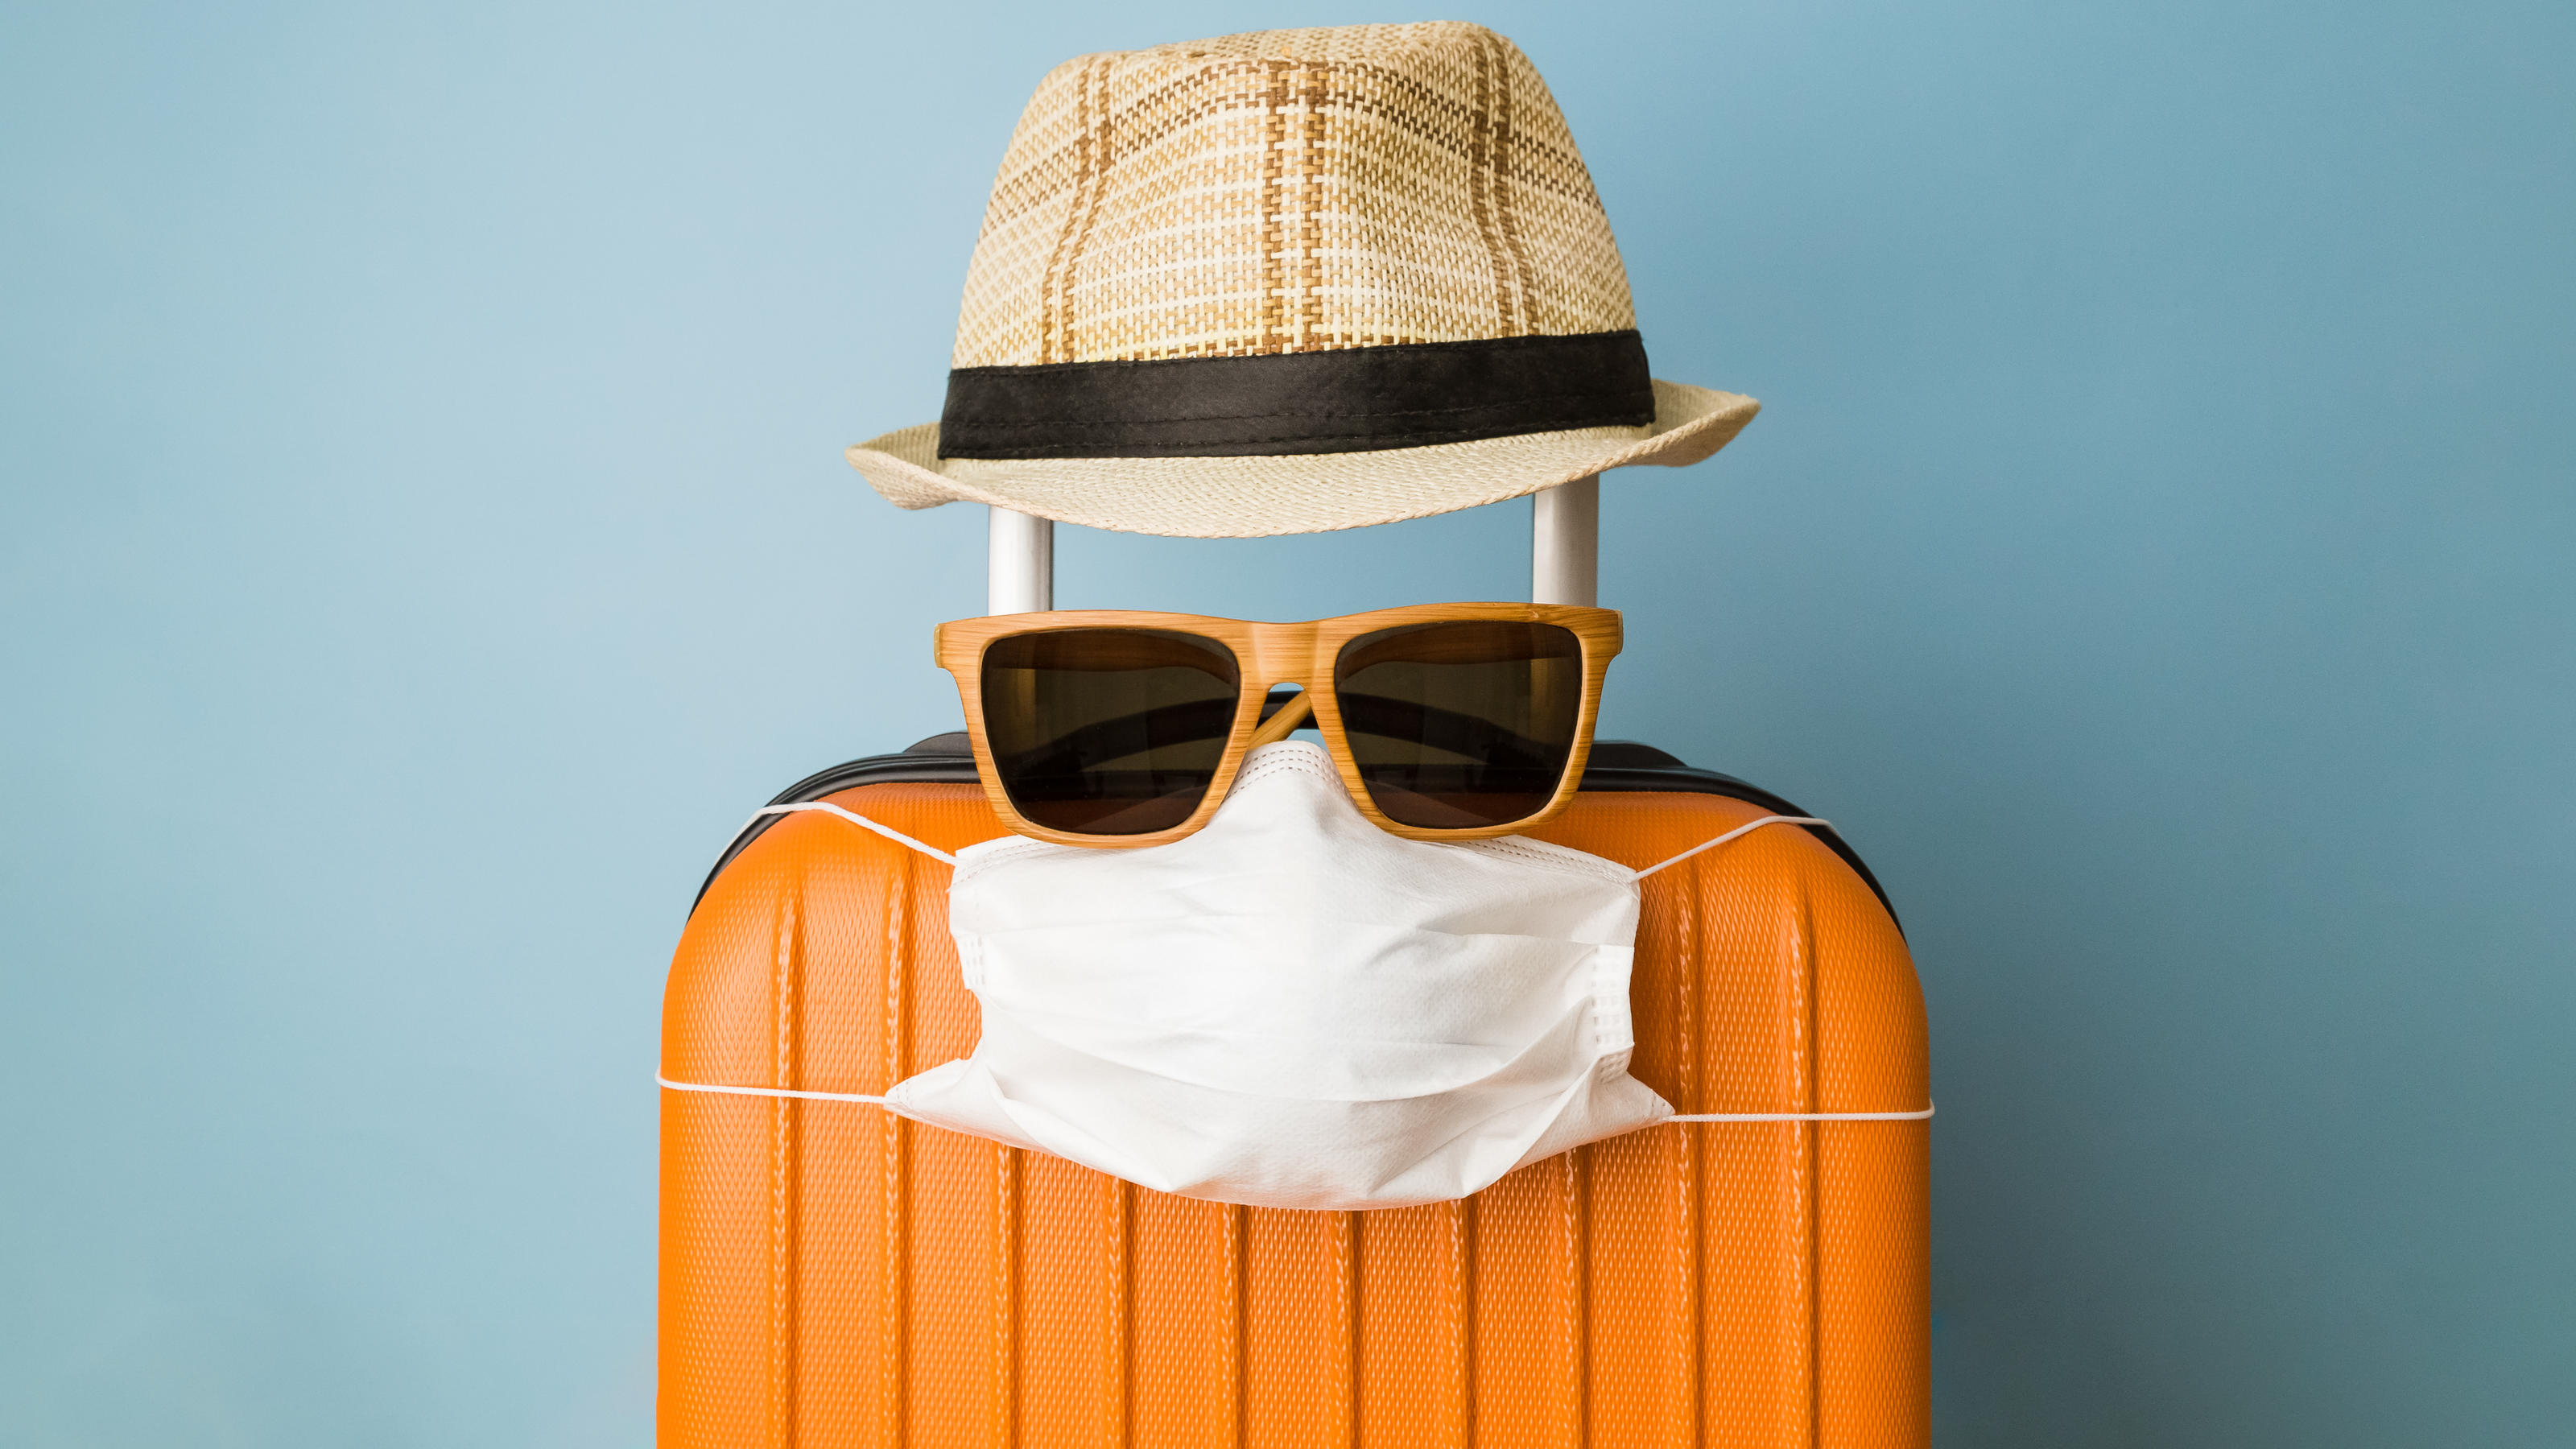 Ein Koffer "trägt" eine Sonnenbrille und eine Corona-Maske.